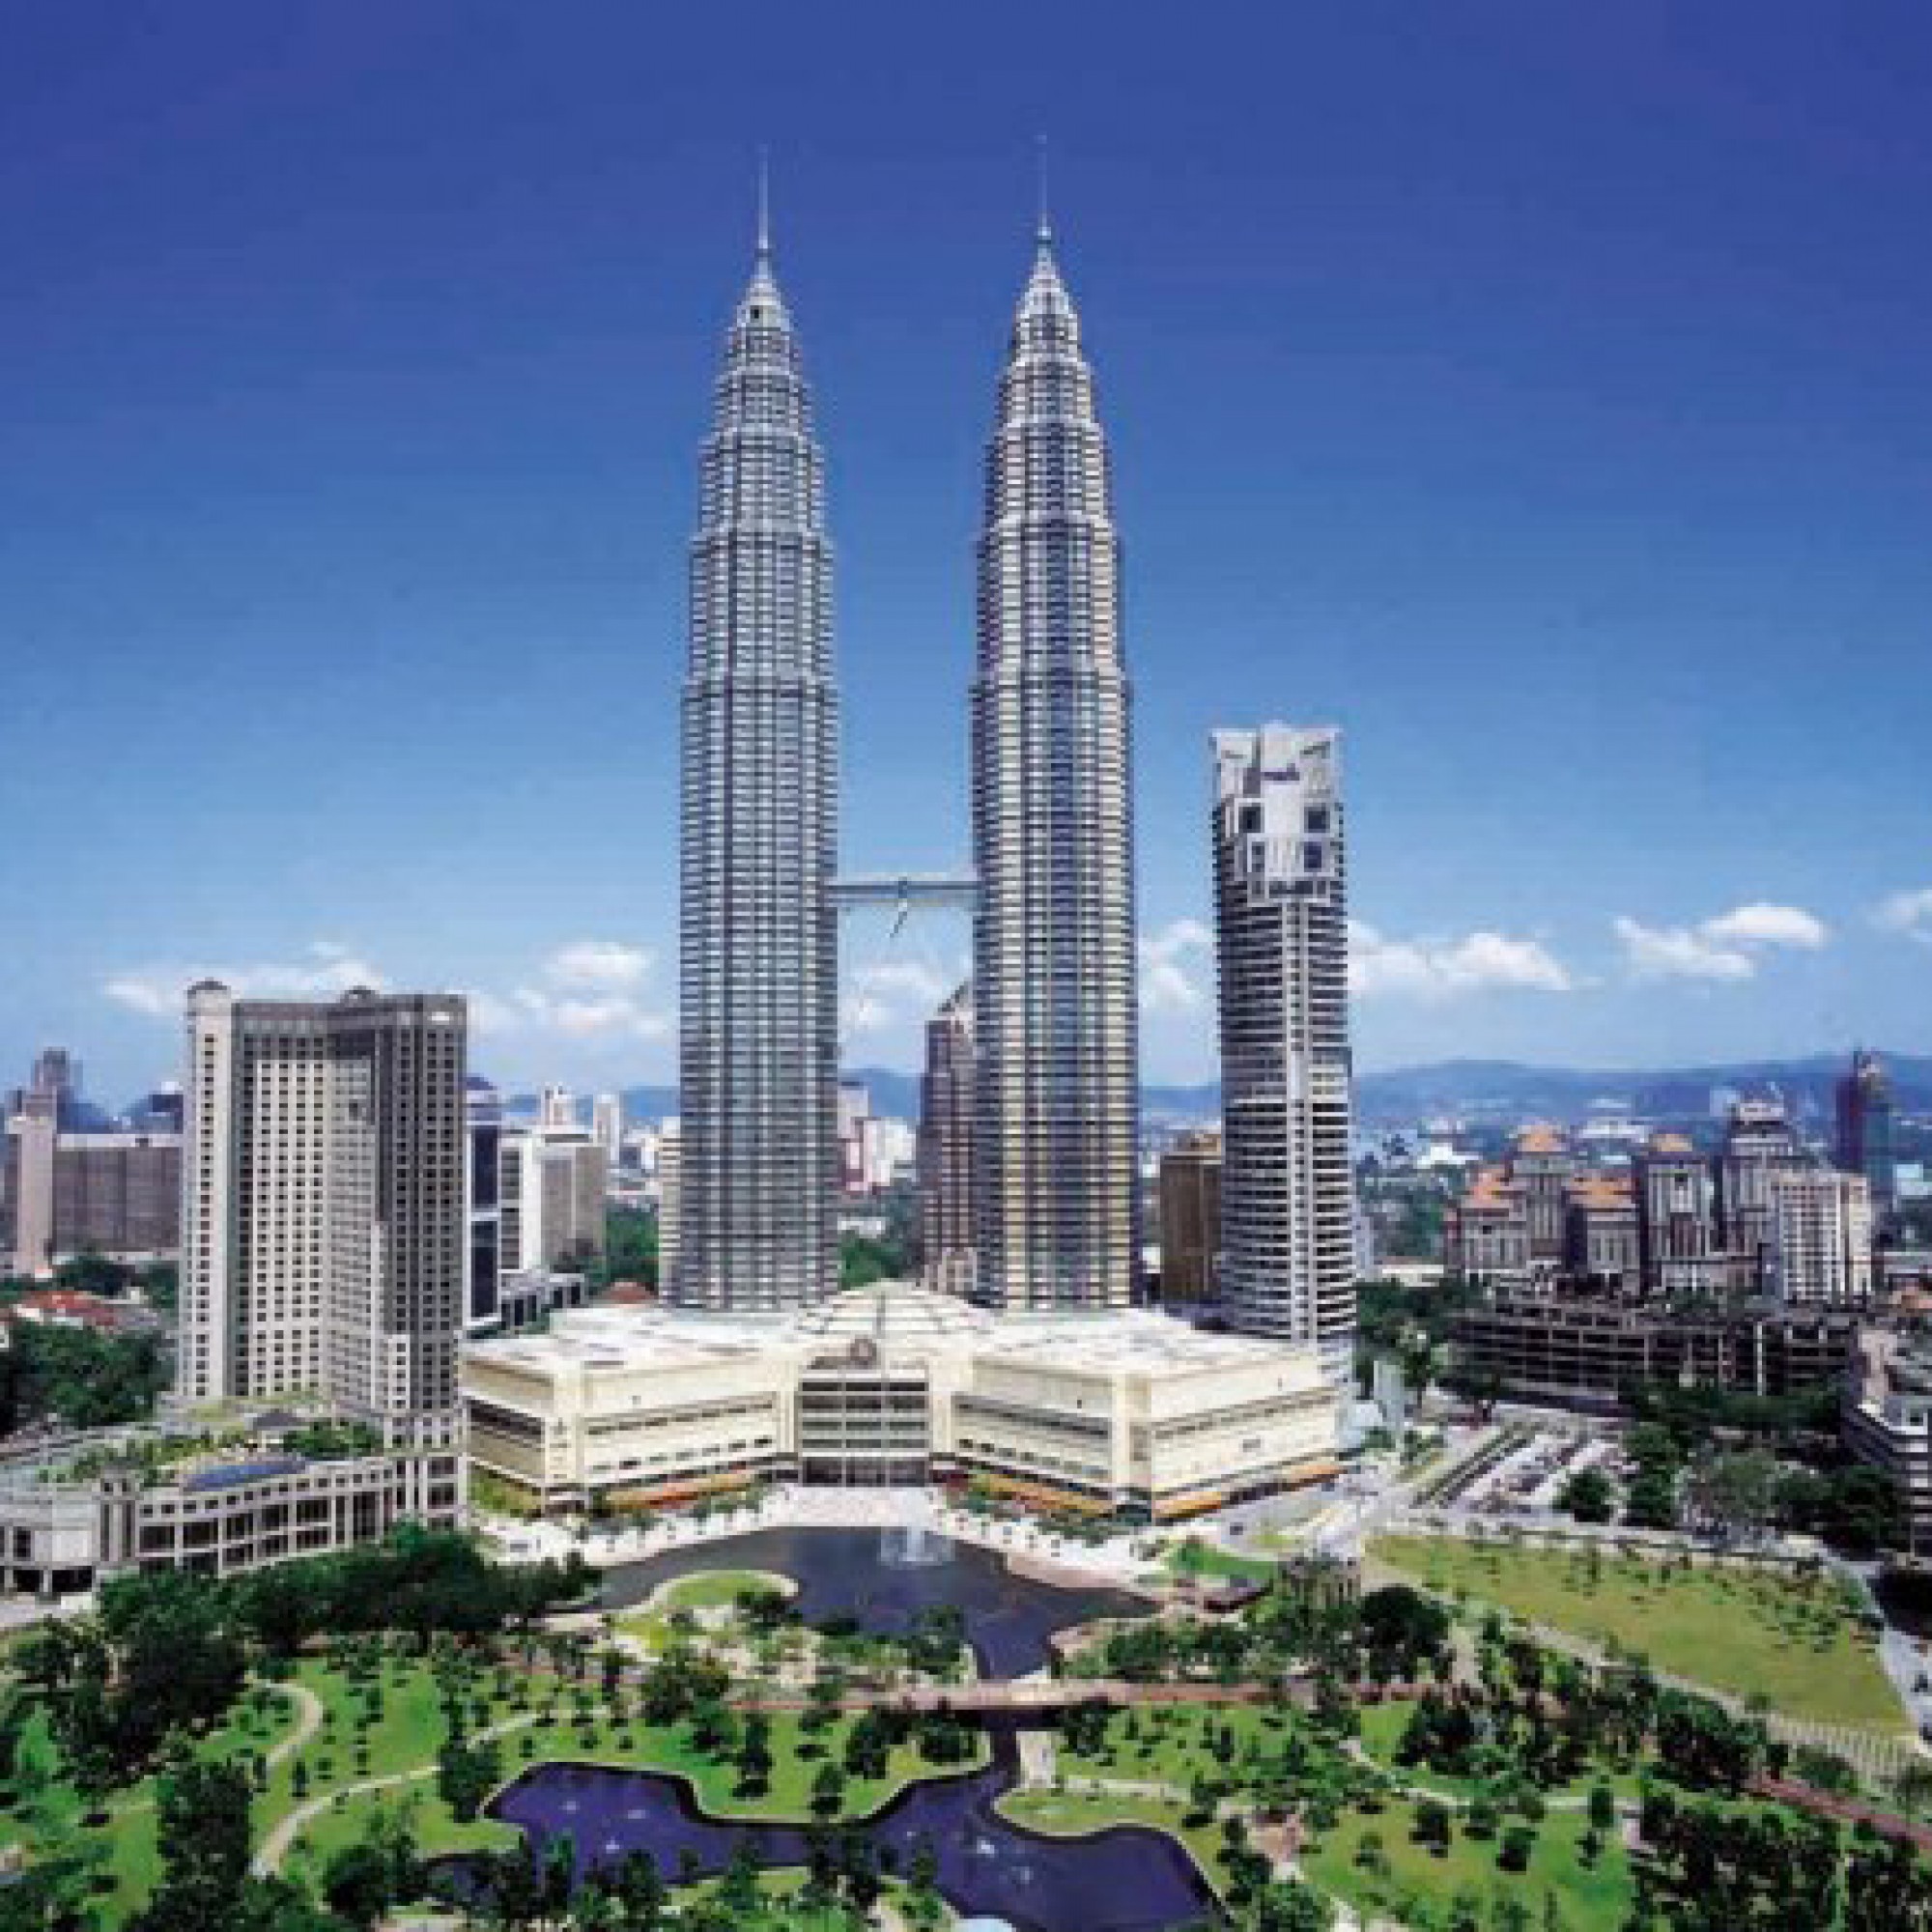 452 Meter sind die Petronas Towers hoch.